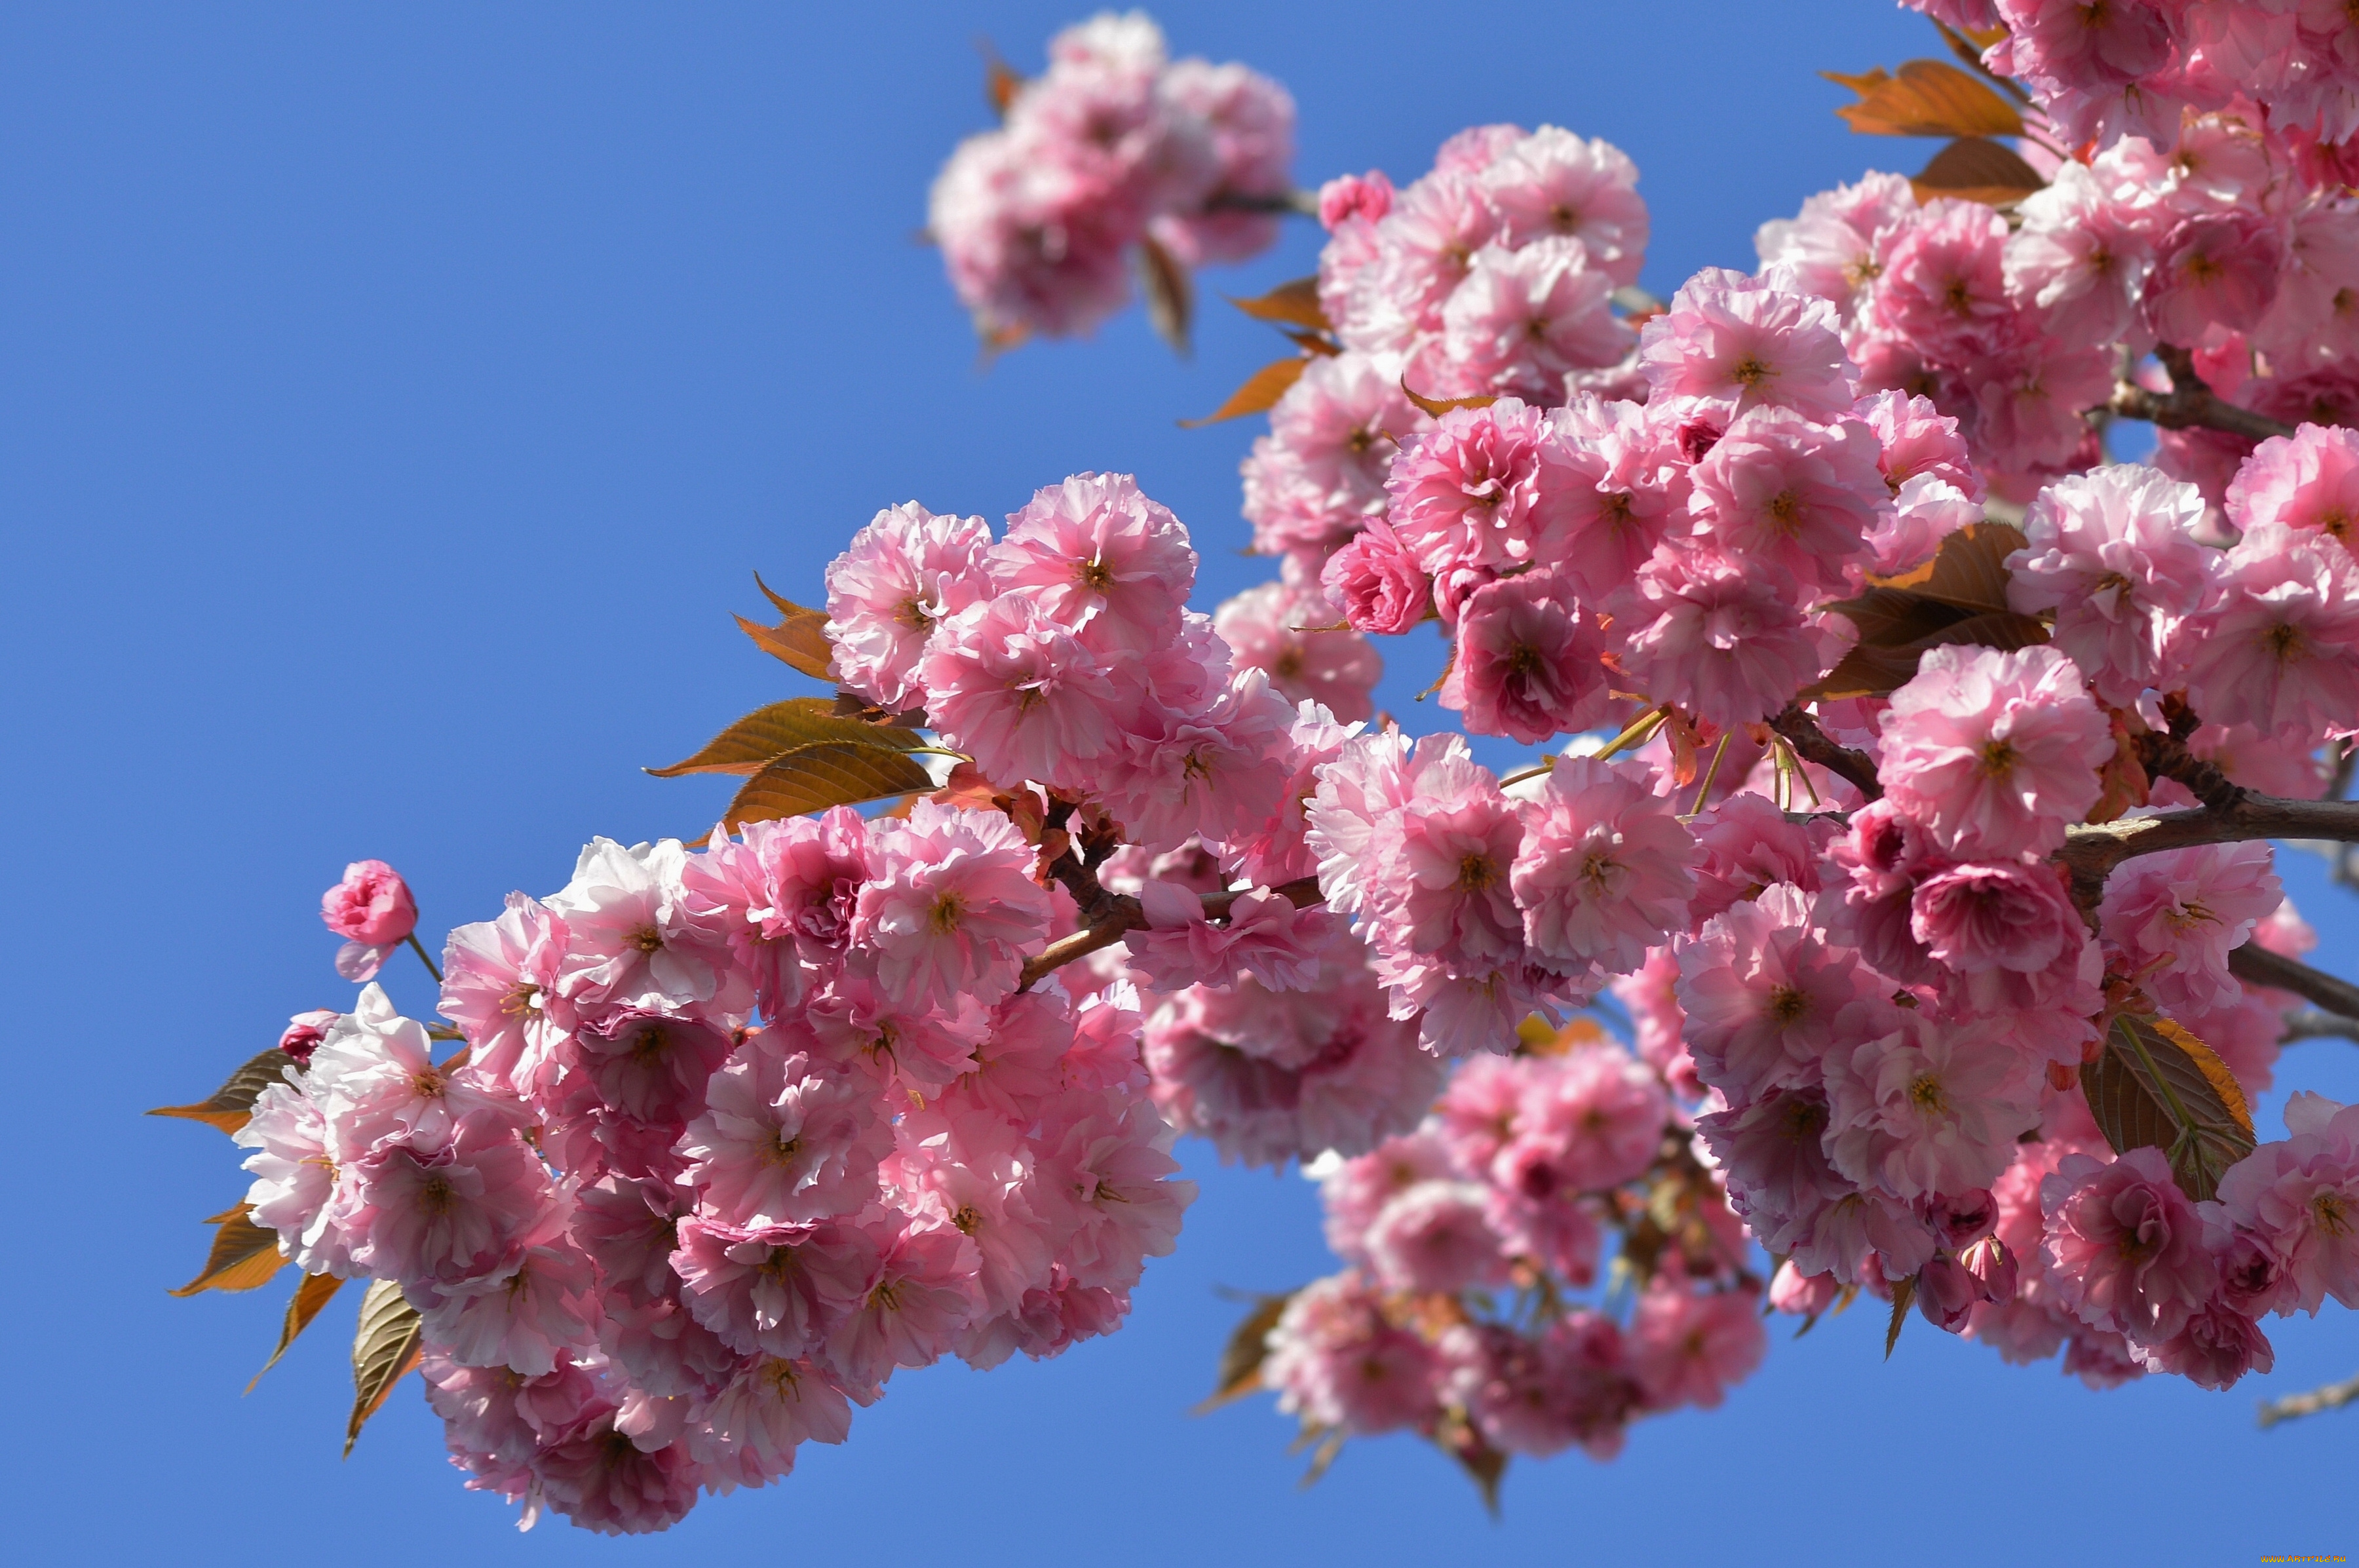 Обои на рабочий стол цветущая. Сакура японская вишня. Хризантема Сакура. Сакура вишня декоративная. Сакура цветение растения.